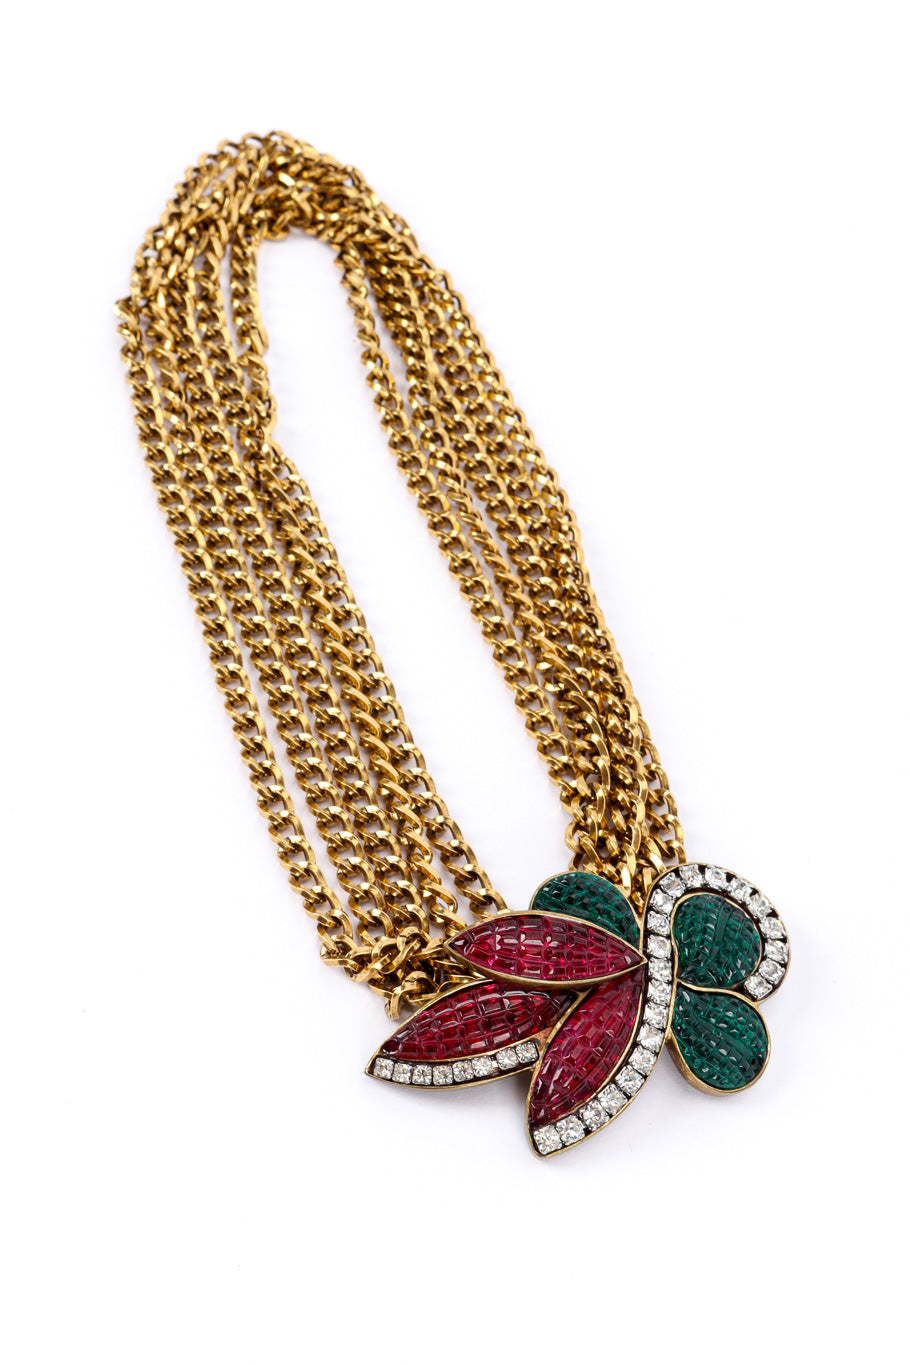 Vintage Tess Designs Multi Strand Fleur Pendant Necklace front view @recessla